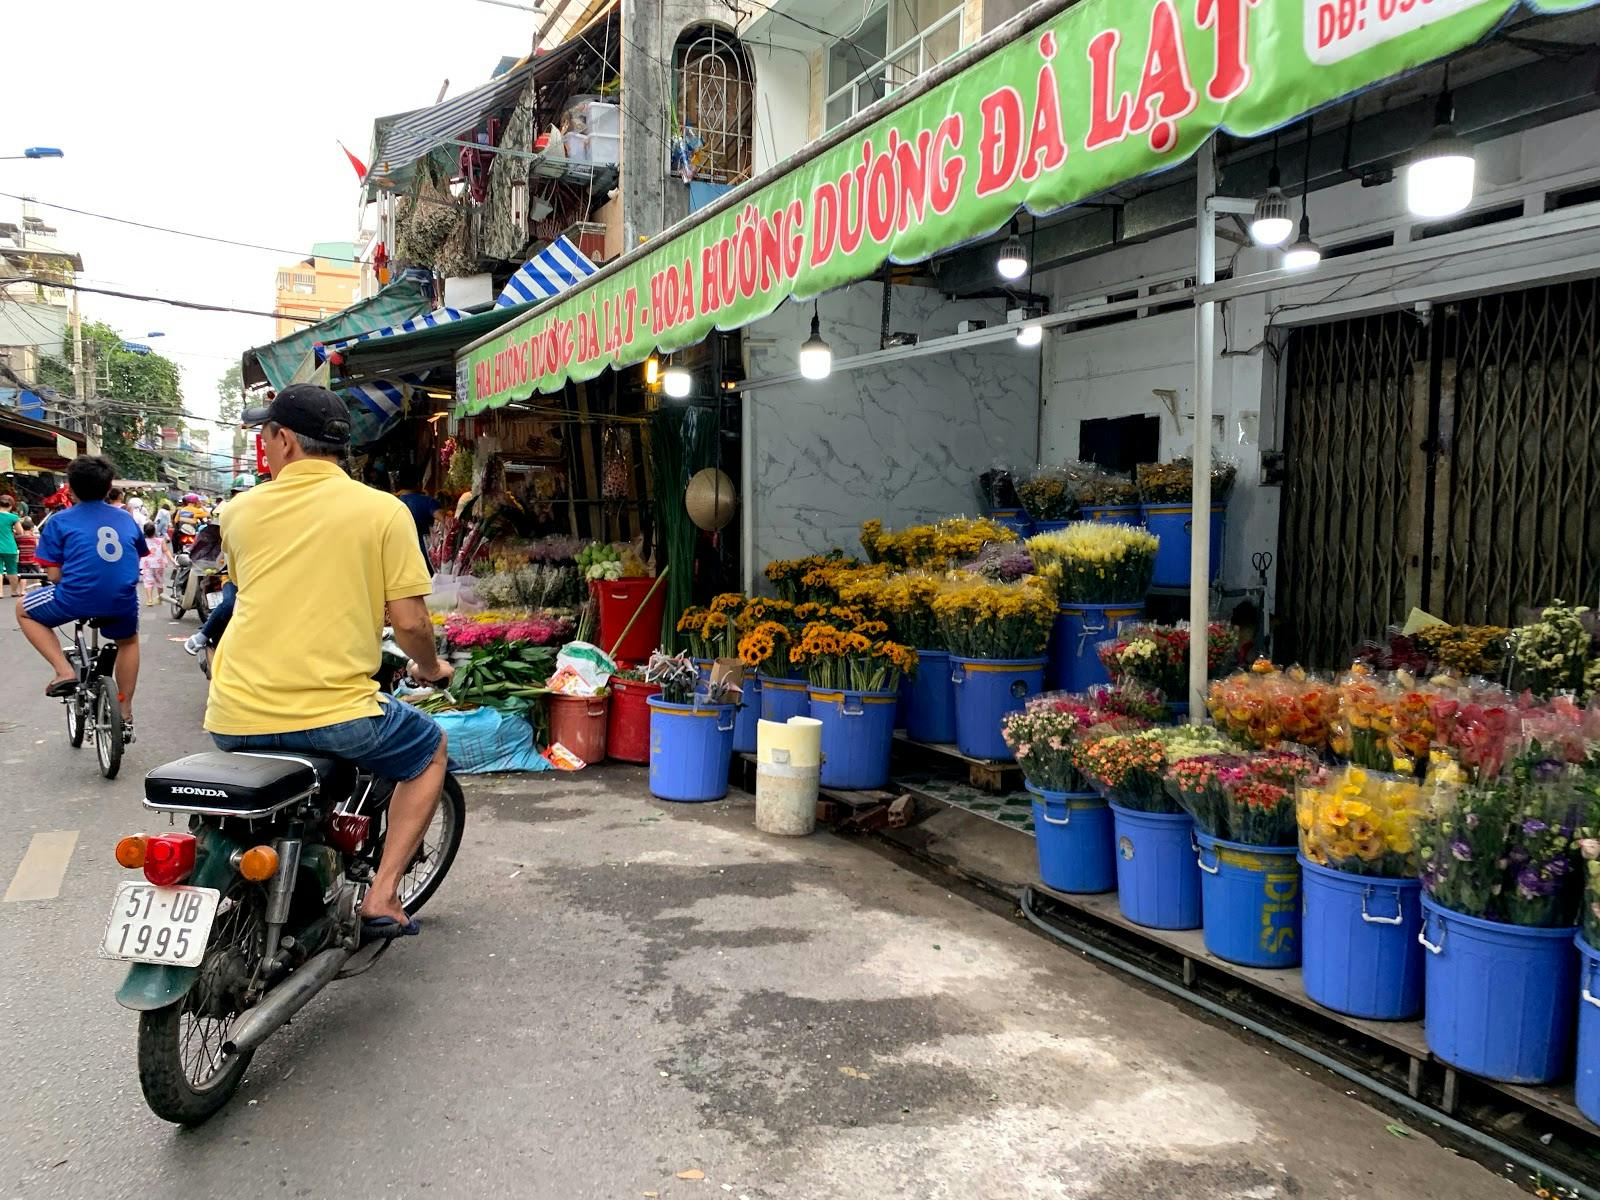 Image - Ho Thi Ky Flower Market